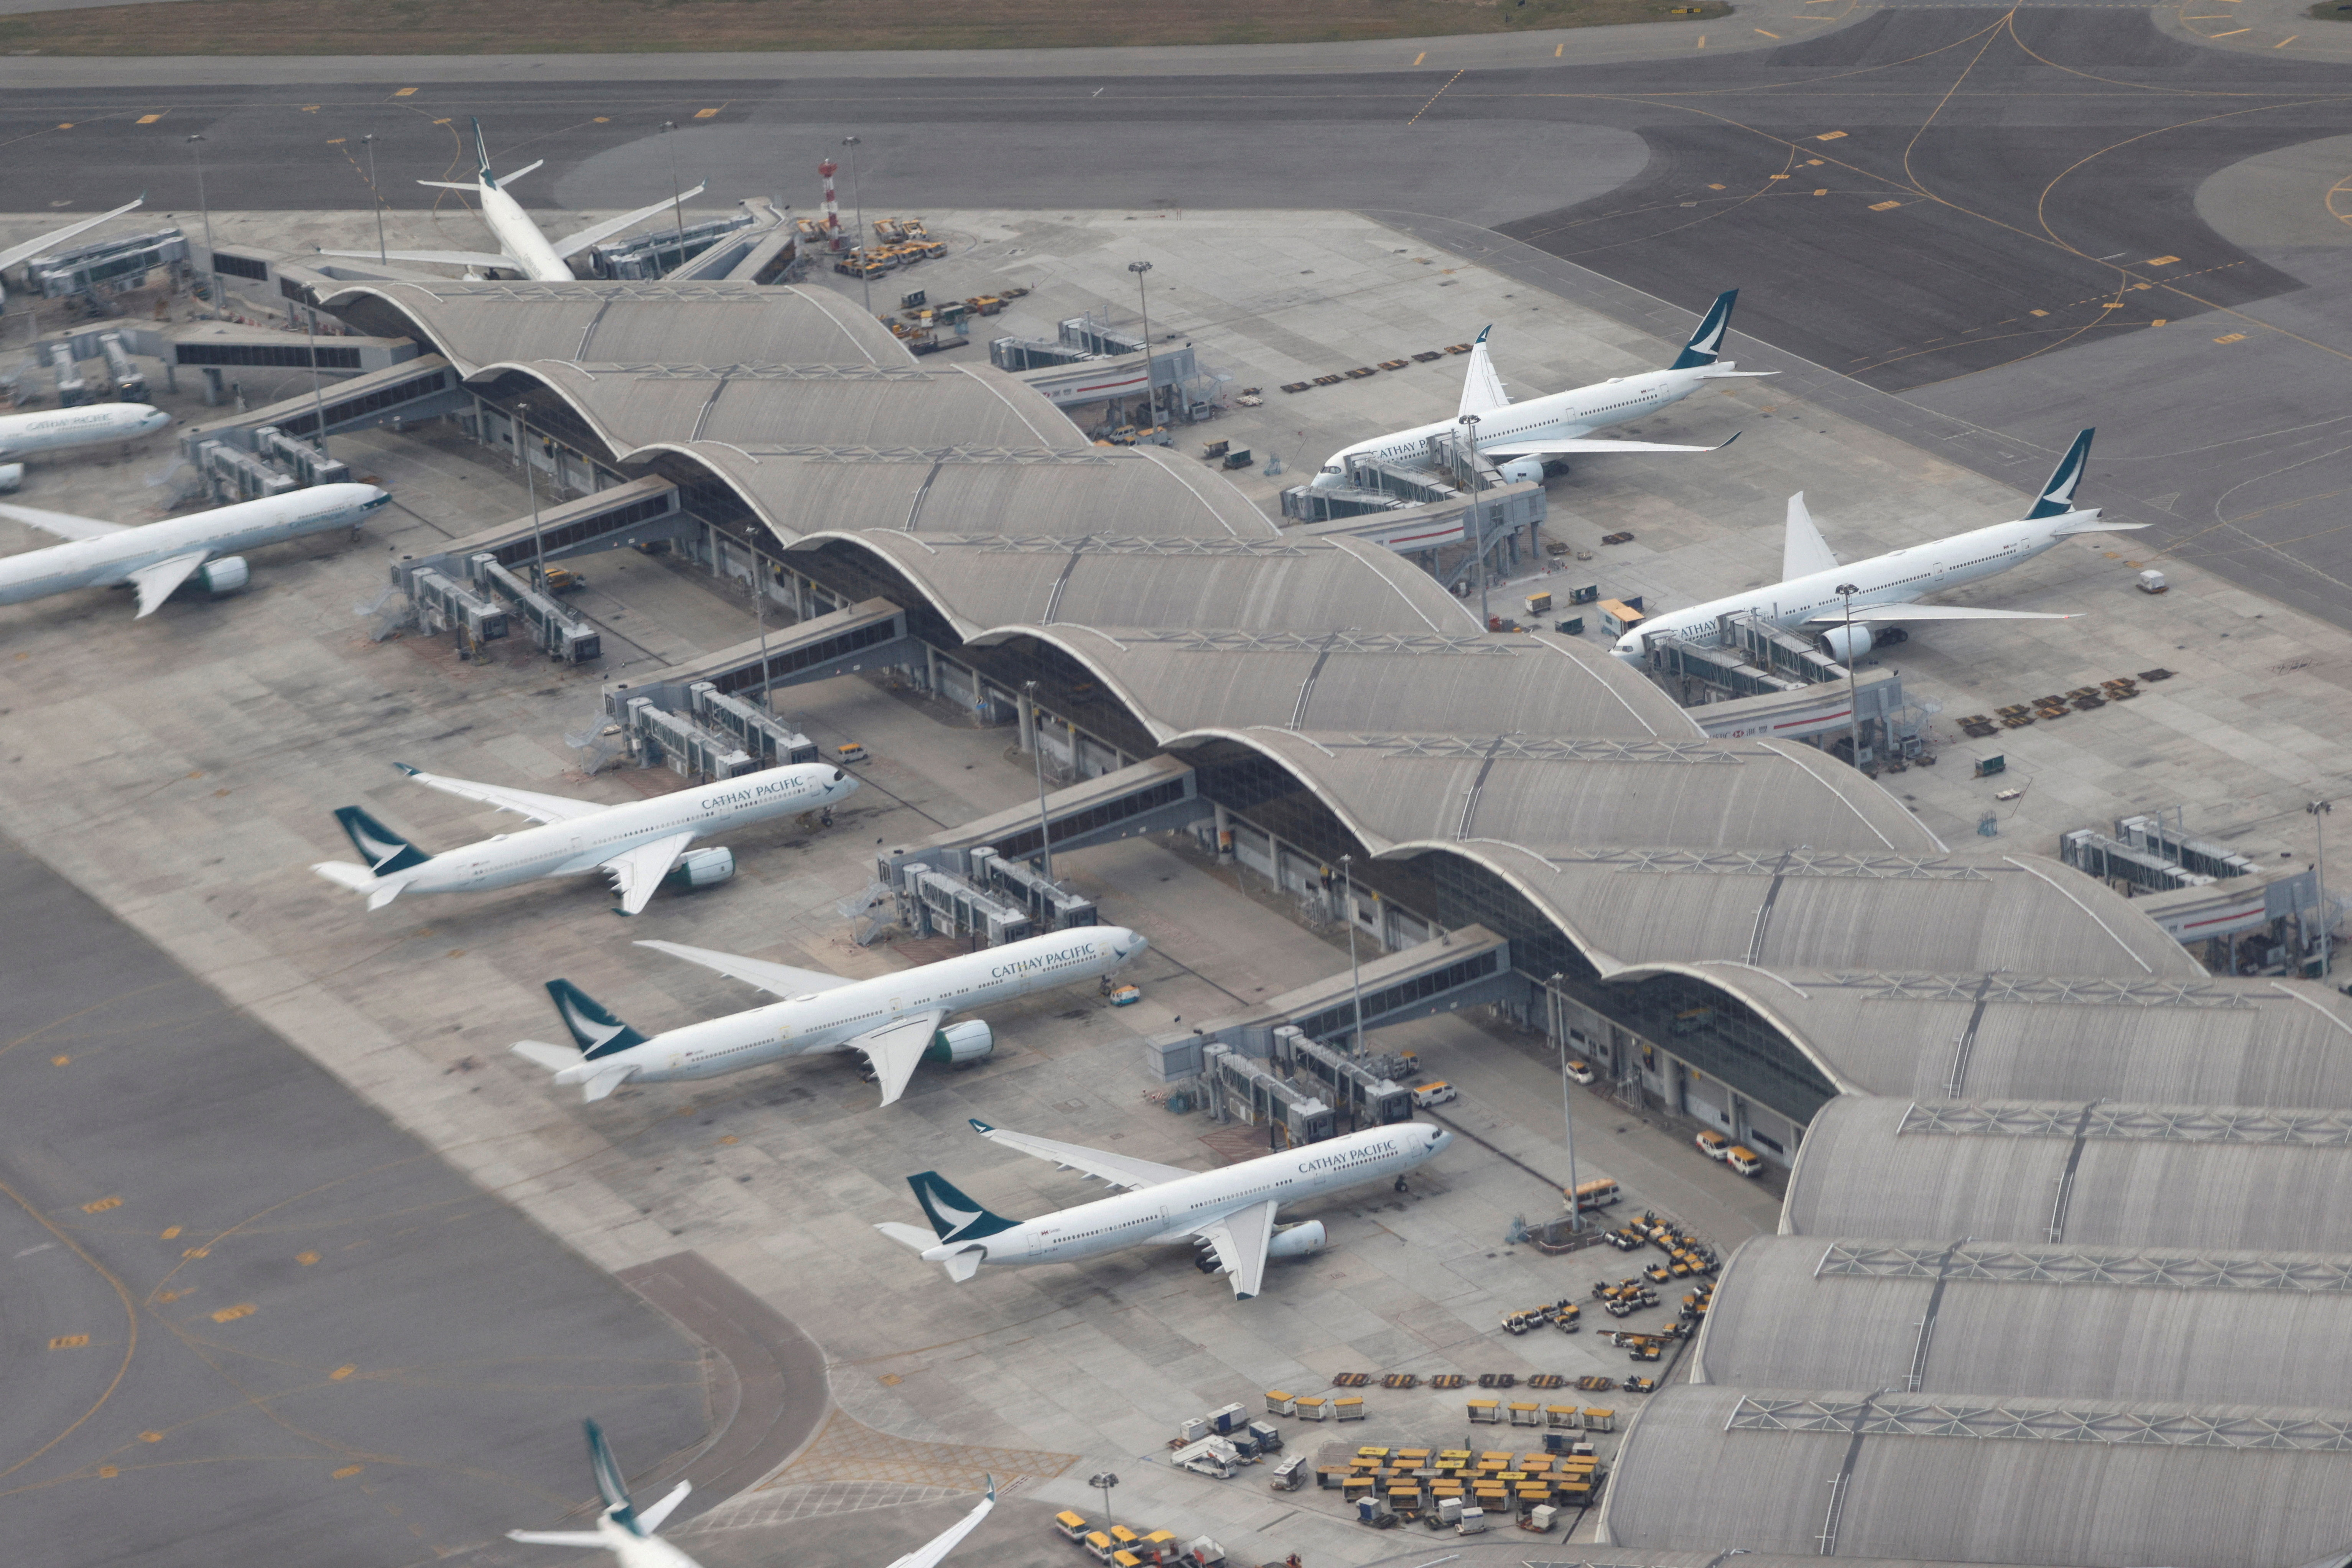 Aircraft of Cathay Pacific are parked on the tarmac at the Hong Kong International Airport, Hong Kong